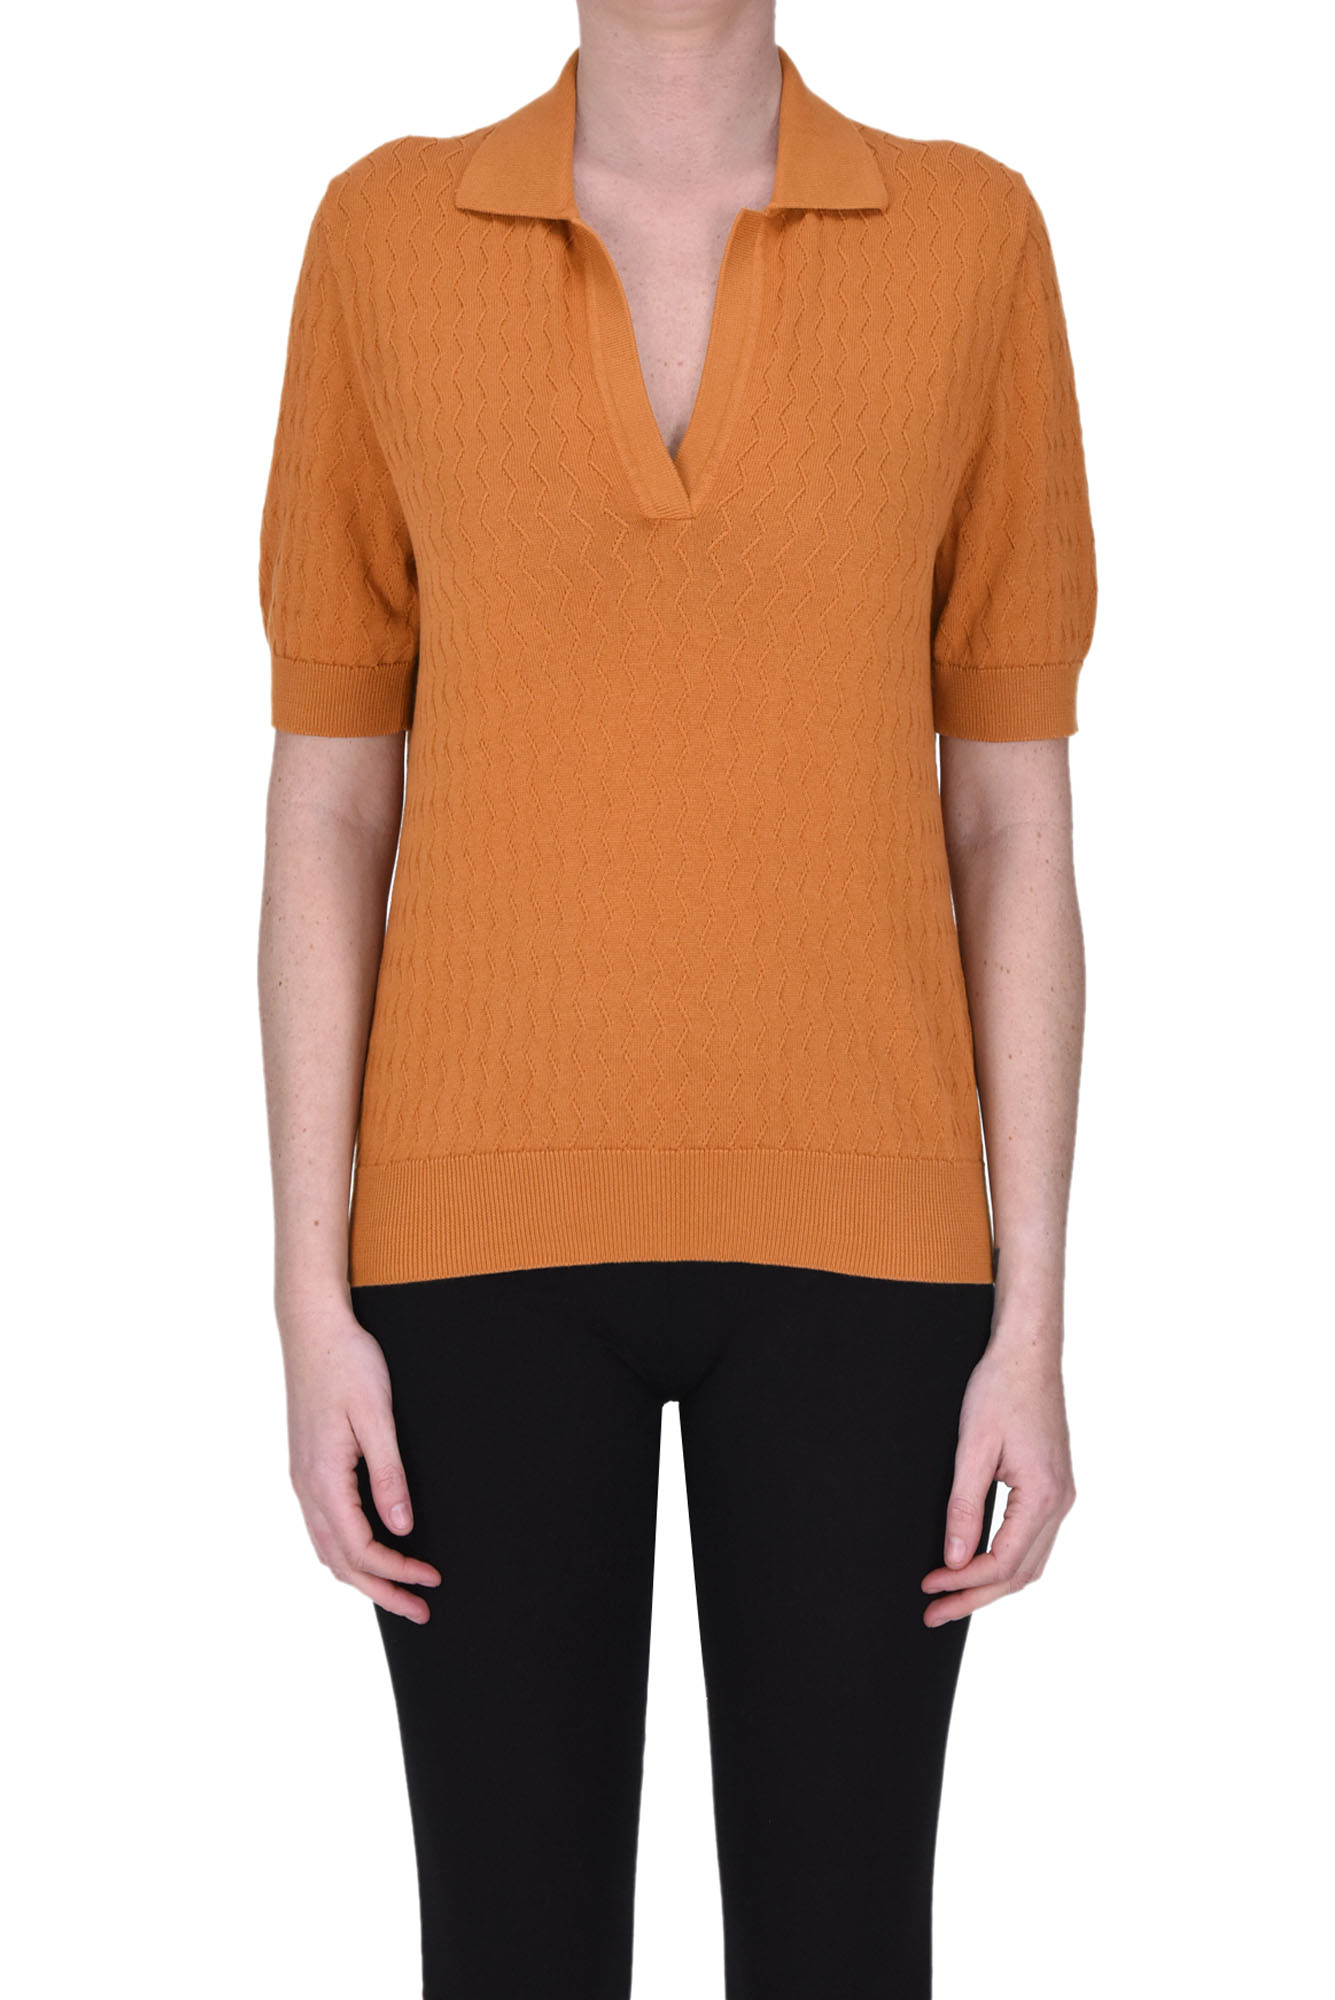 Circolo 1901 Woman Sweater Camel Size L Cotton In Orange